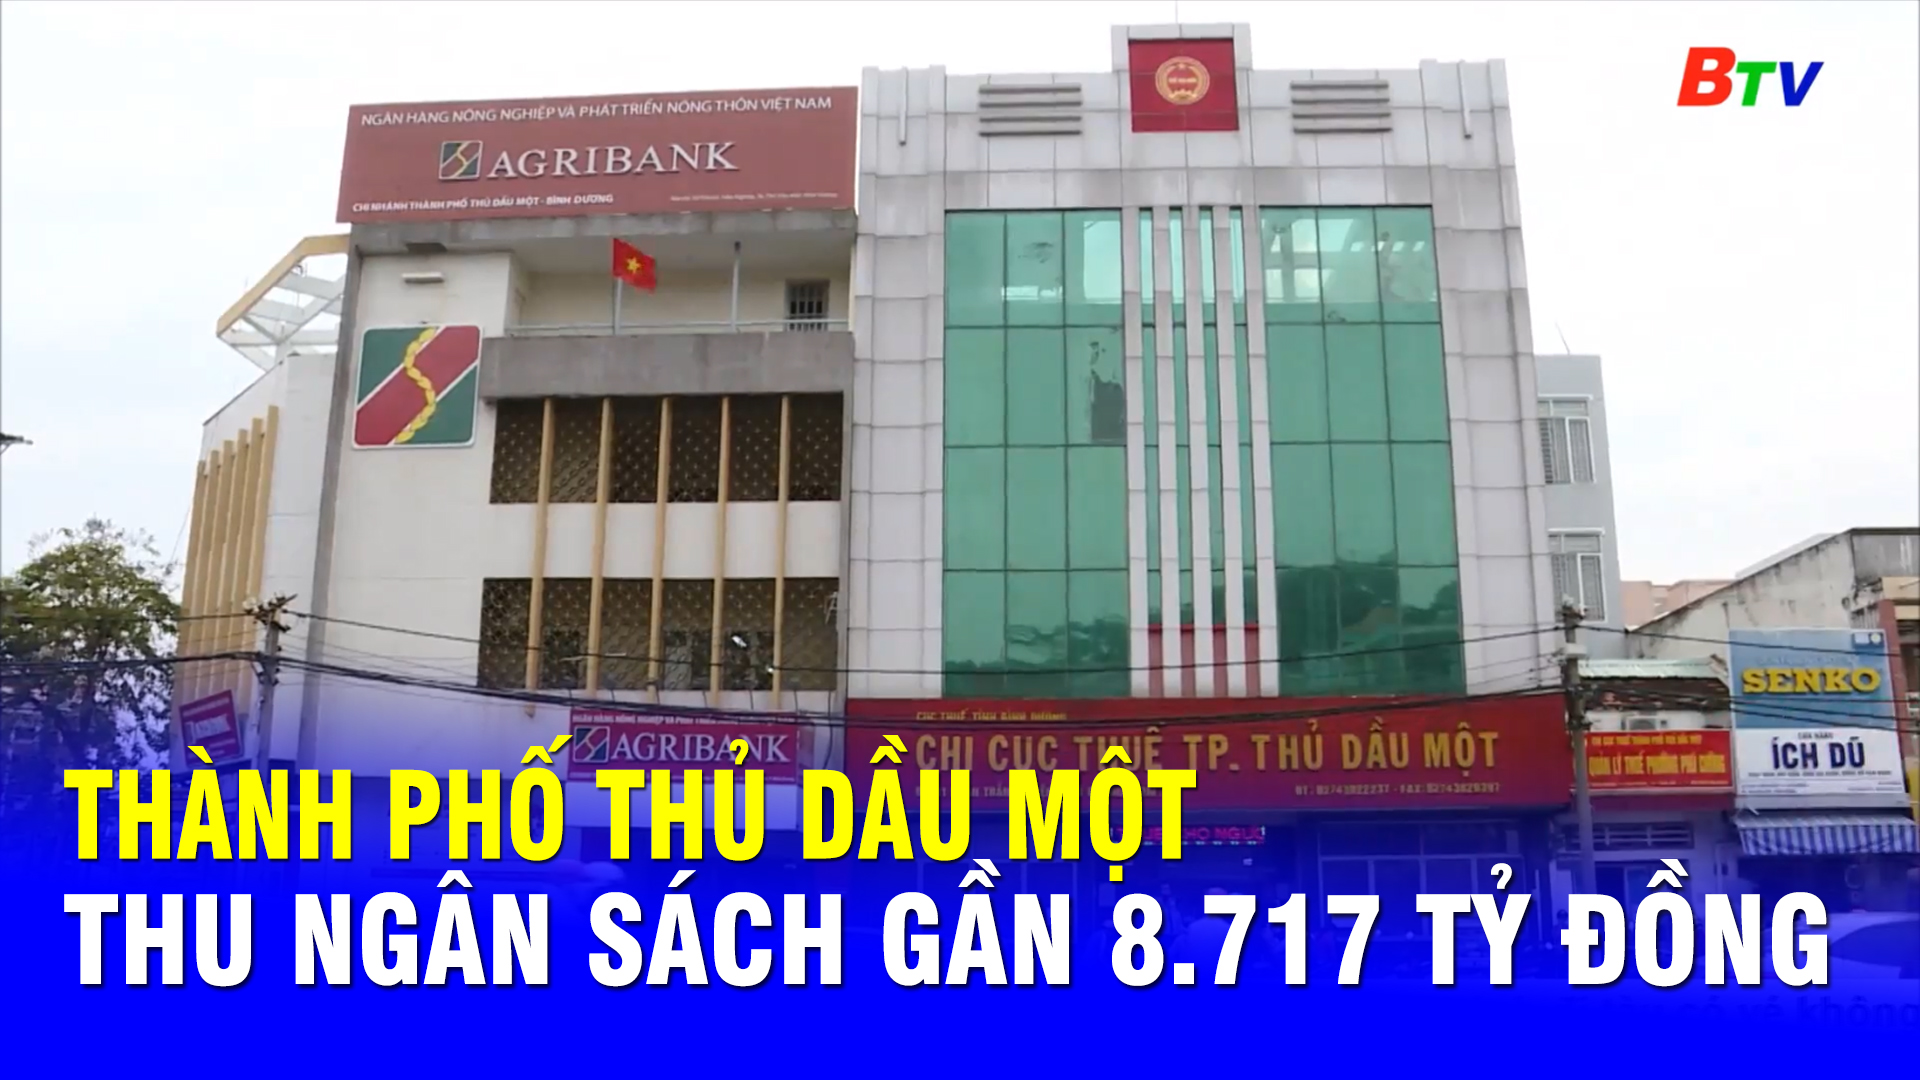 Thành phố Thủ Dầu Một thu ngân sách gần 8.717 tỷ đồng